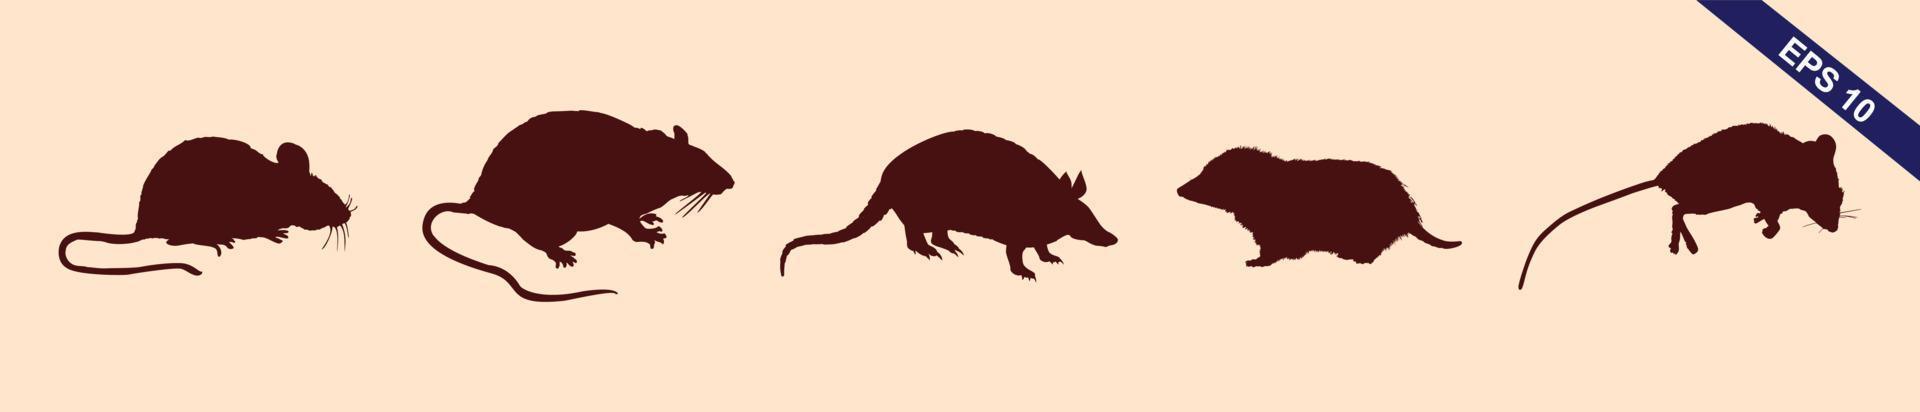 råtta och mus samling - vektor silhuett